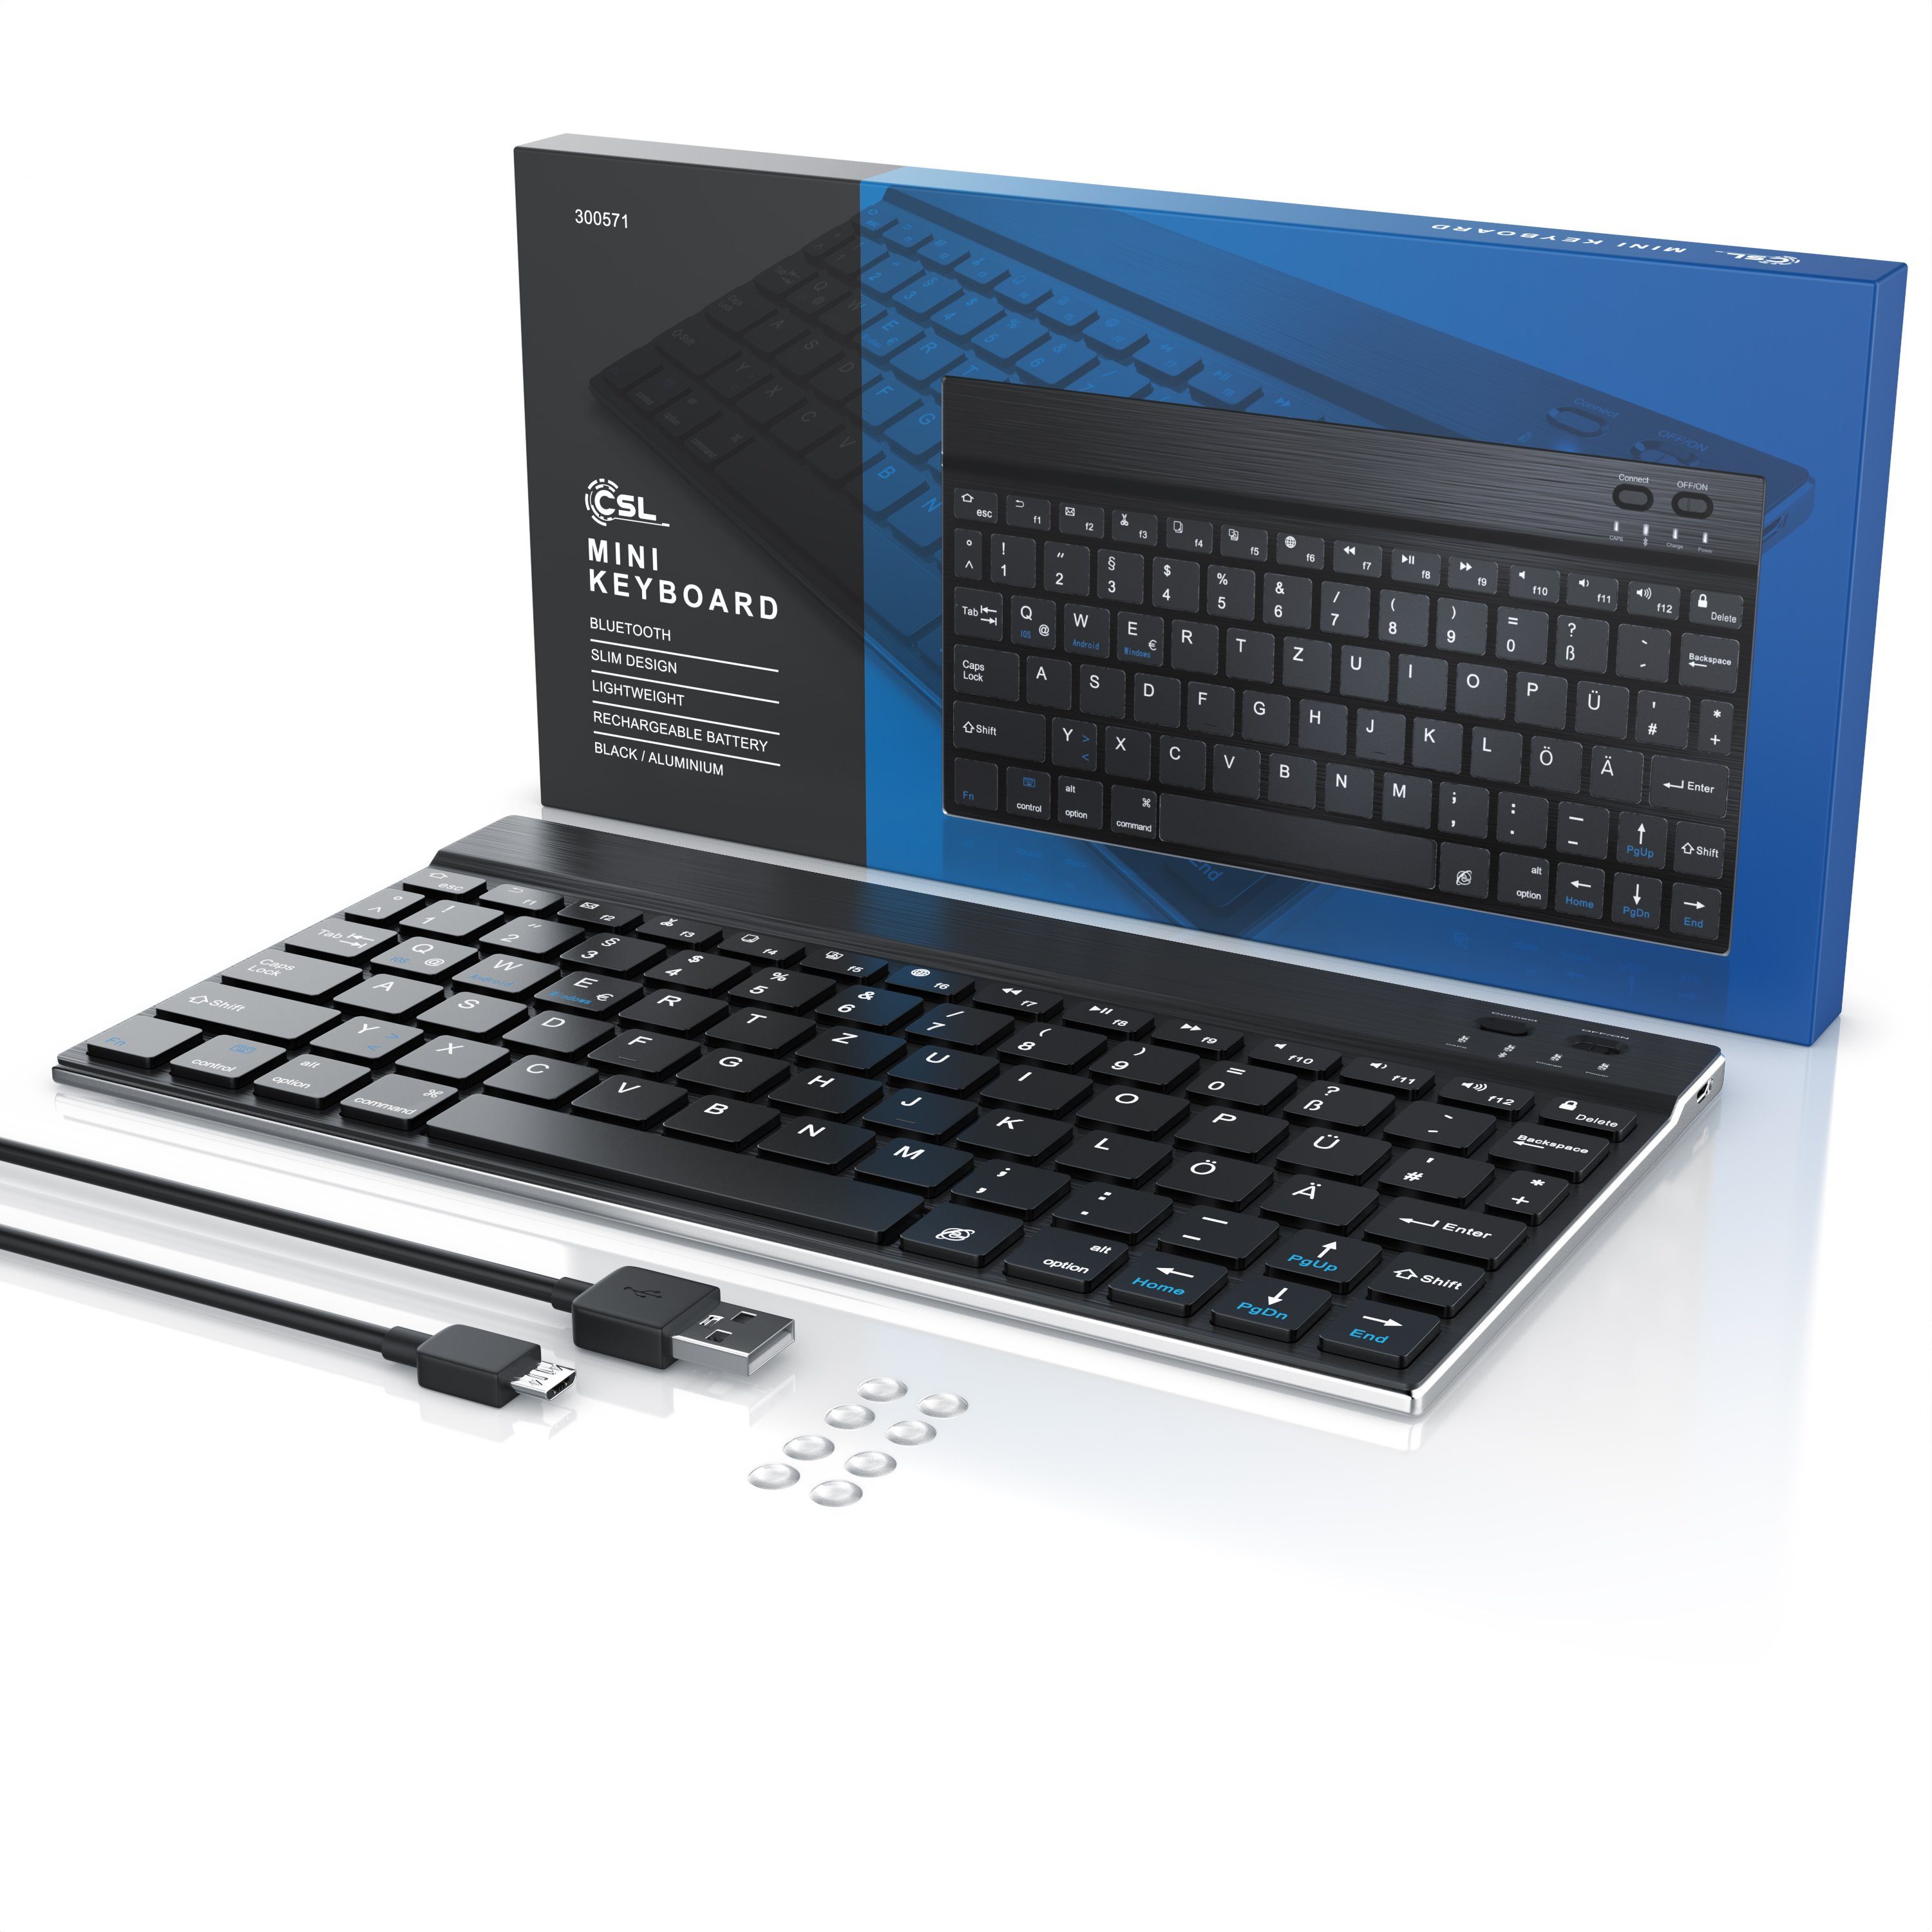 CSL Wireless-Tastatur (Ultra Slim Keyboard, Alugehäuse, 3.0) Deutsches Layout, Bluetooth, schwarz/silber BT